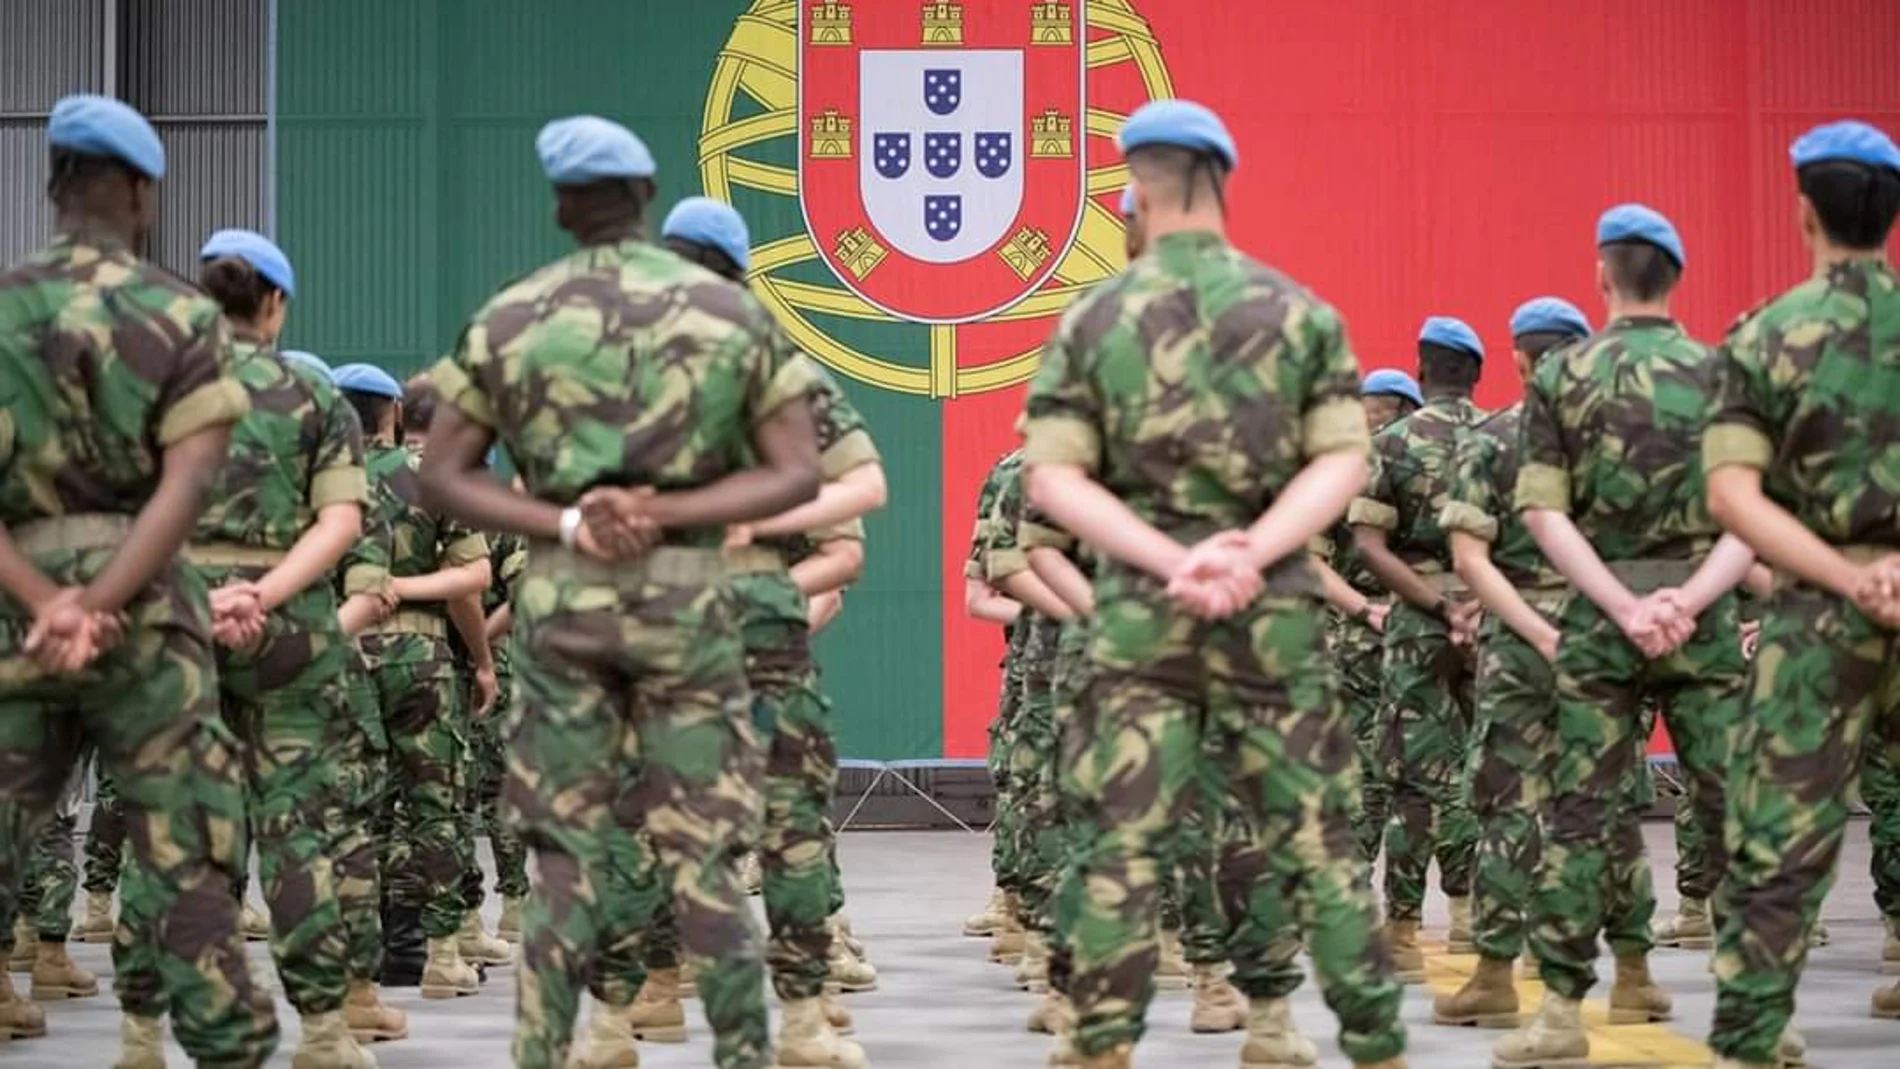 Efectivos de las Fuerzas Armadas de Portugal